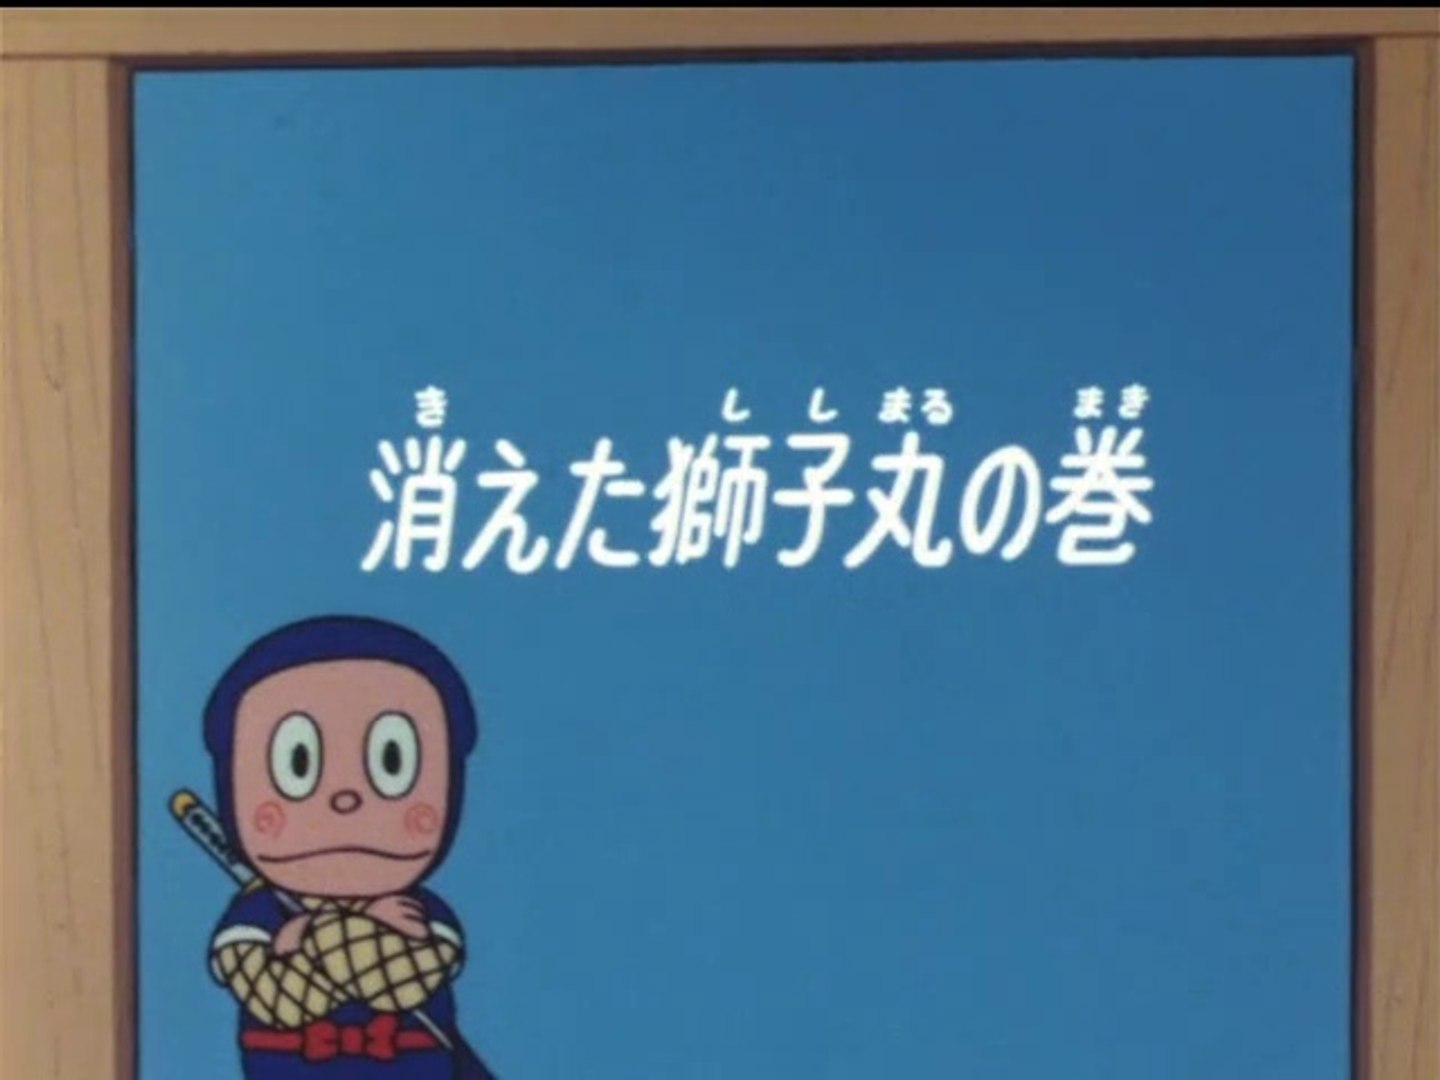 Ninja Hattori Kun 第23話 消えた獅子丸の巻 動画 Dailymotion